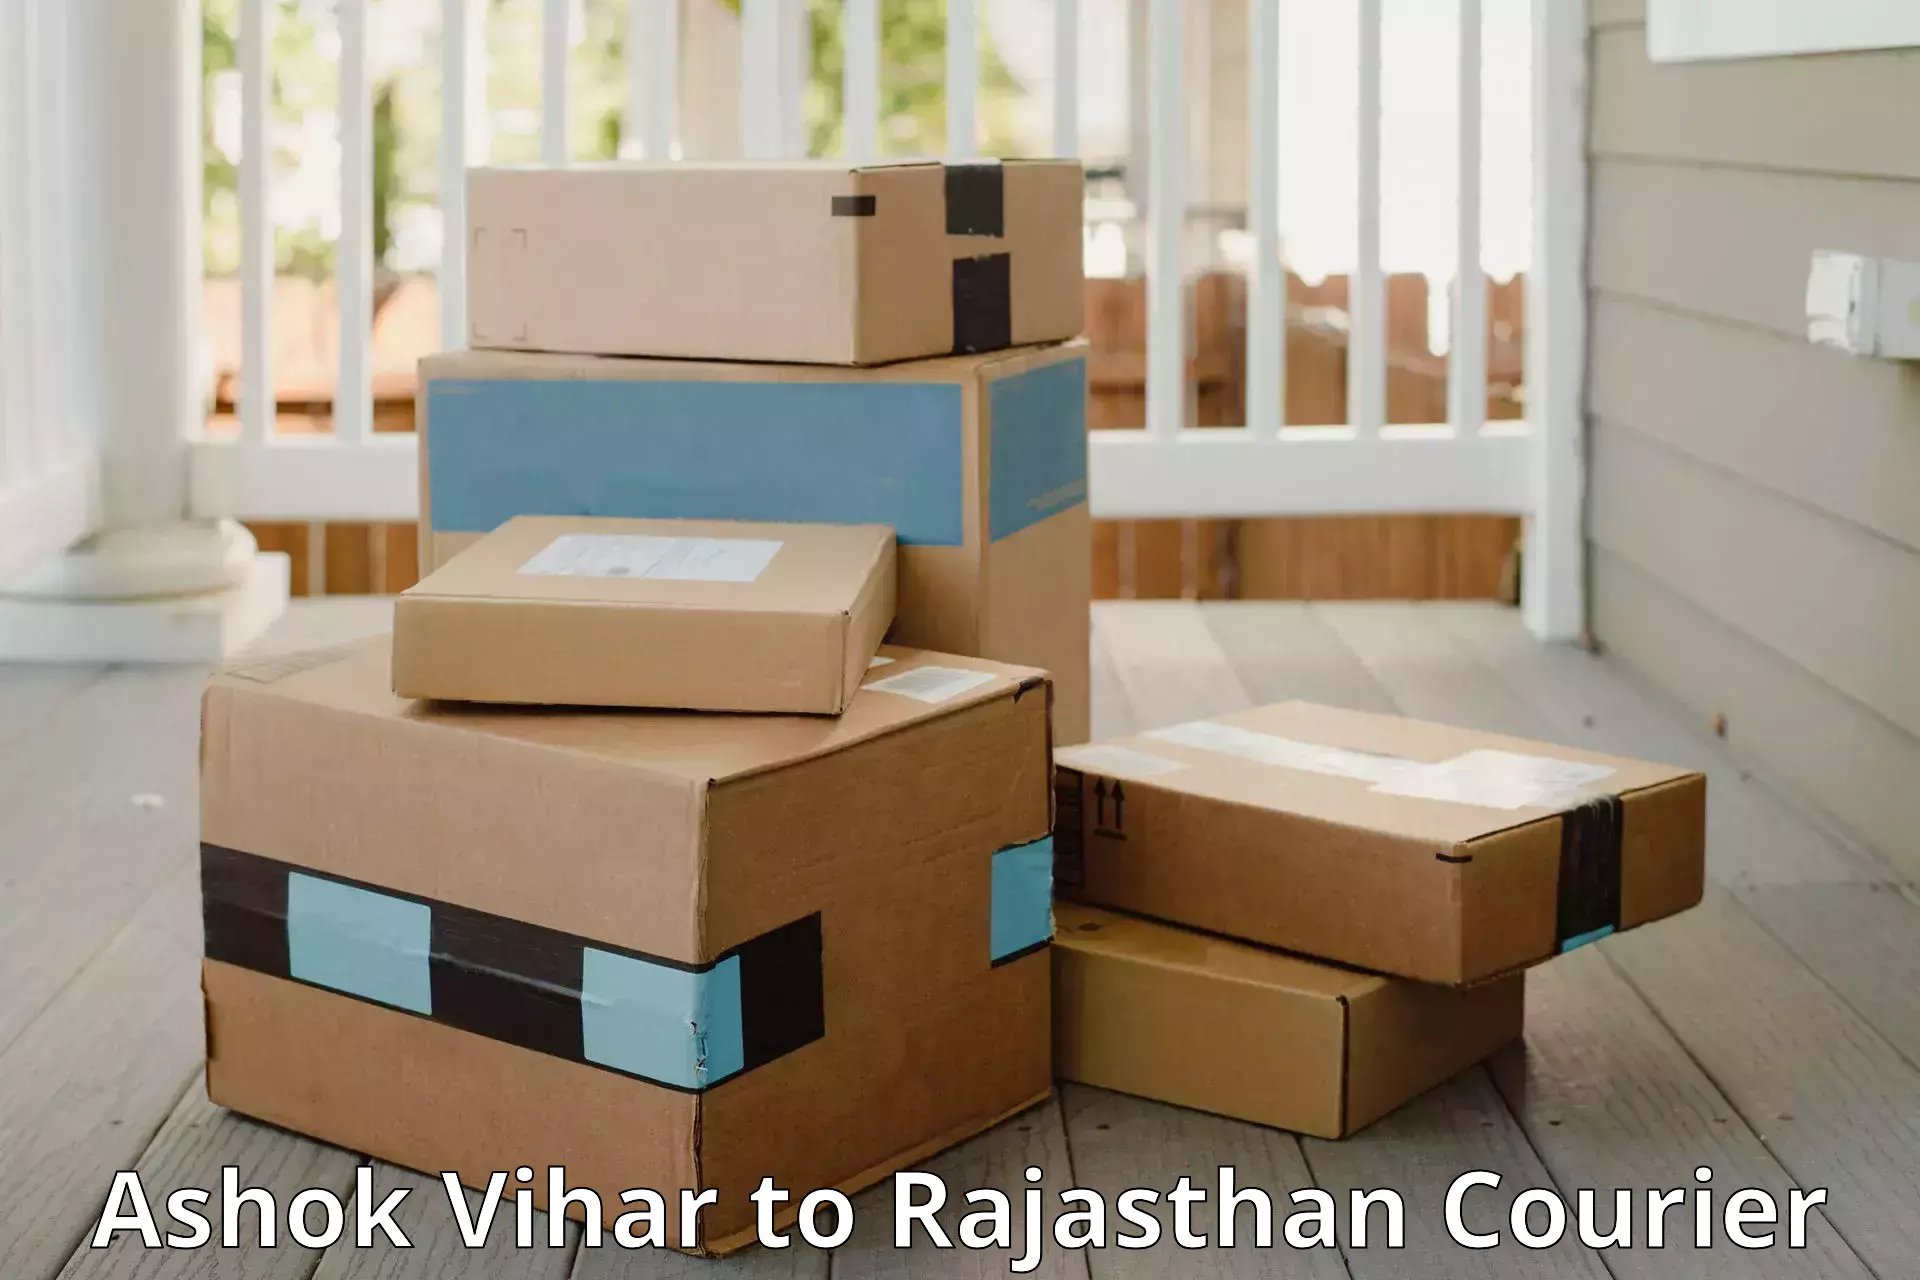 Baggage transport technology Ashok Vihar to Rajasthan